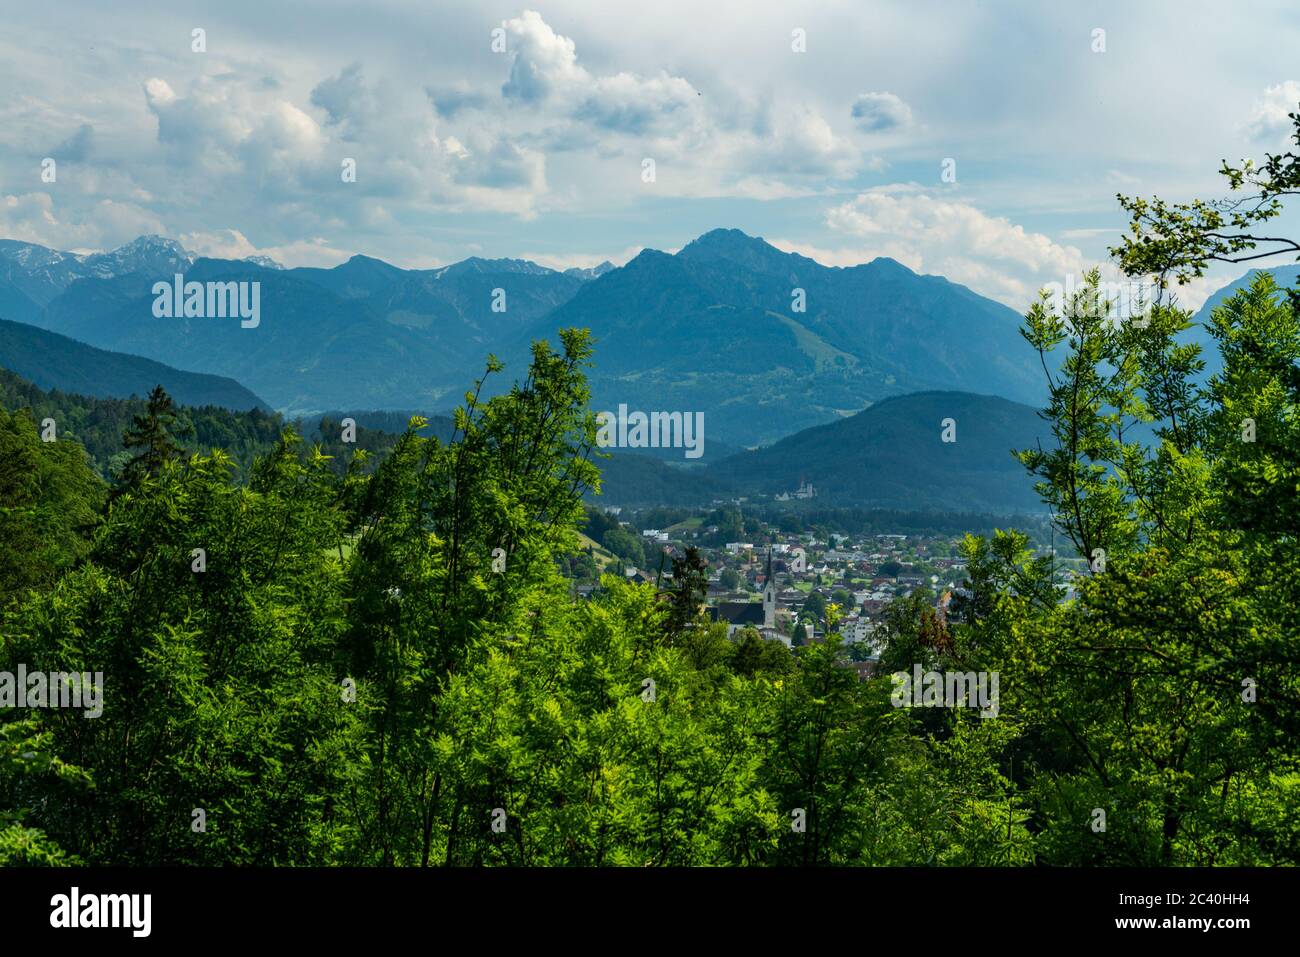 Aussicht von Orsanka nach Feldkirch, vista da Orsanka a Feldkirch, Vorarlberg, Austria, alleina stehender Kirschbaum auf der Wiese, Hügel und Berge Foto Stock